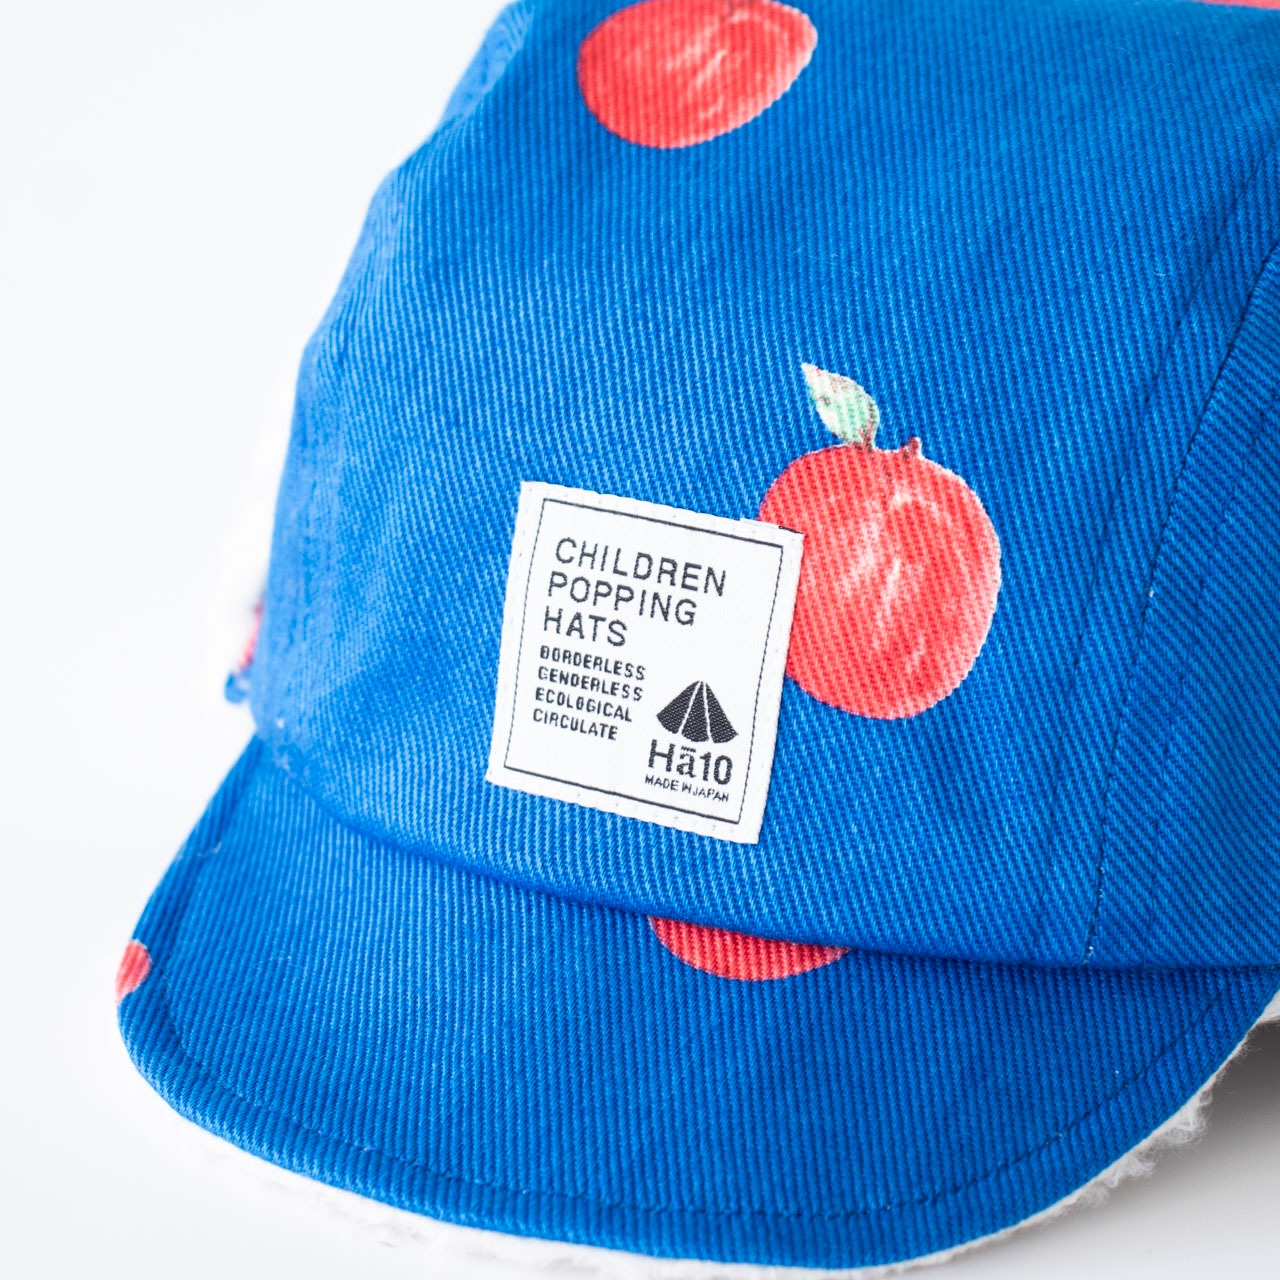 パイロットキャップ【リンゴ】ブランド 子供 帽子 男の子 女の子 日本製 冬 キッズ ギフト